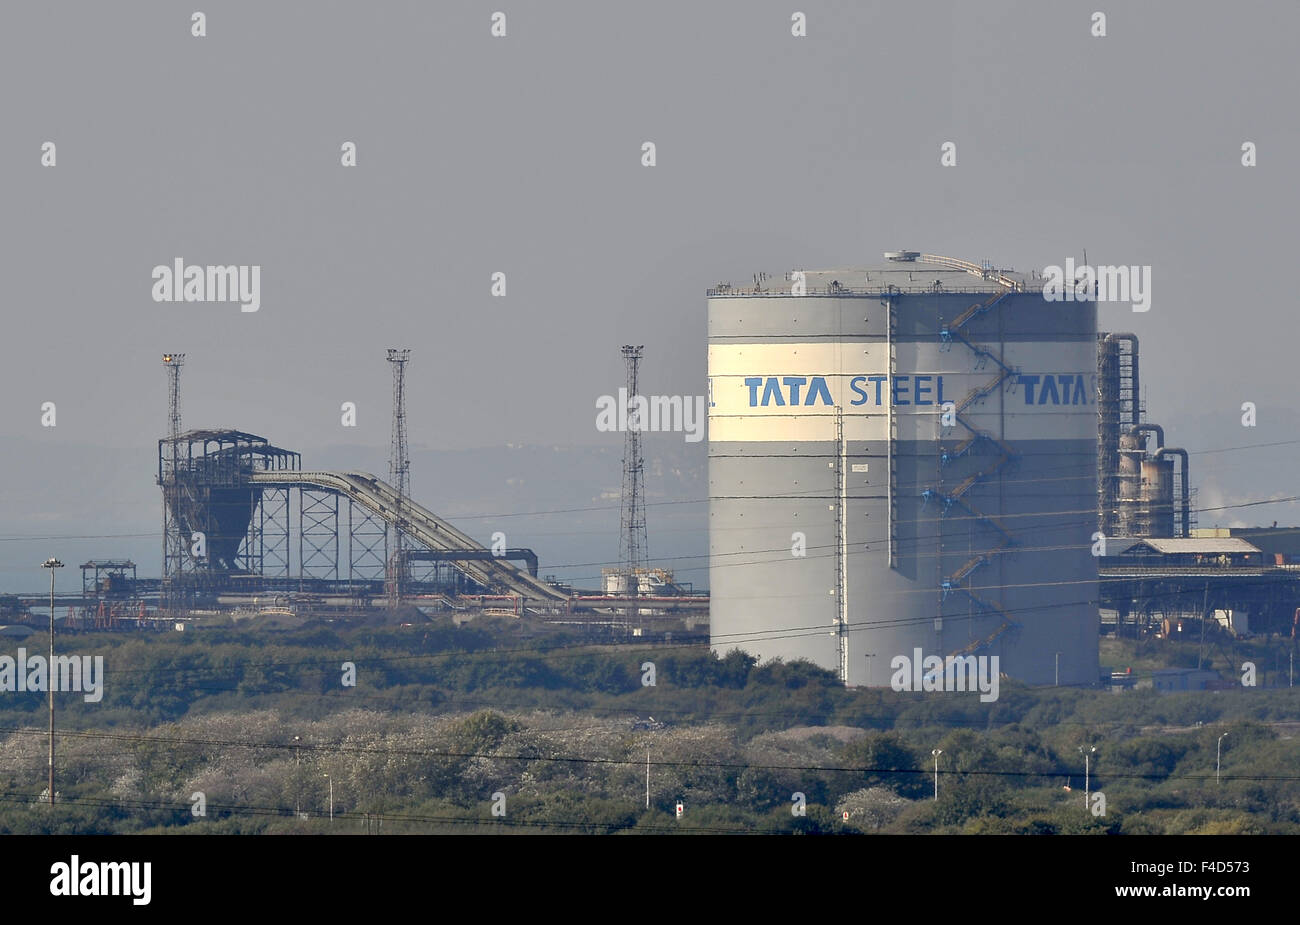 Tata steel plant. Port Talbot. Le sud du Pays de Galles. UK. 02/10/2015. Banque D'Images